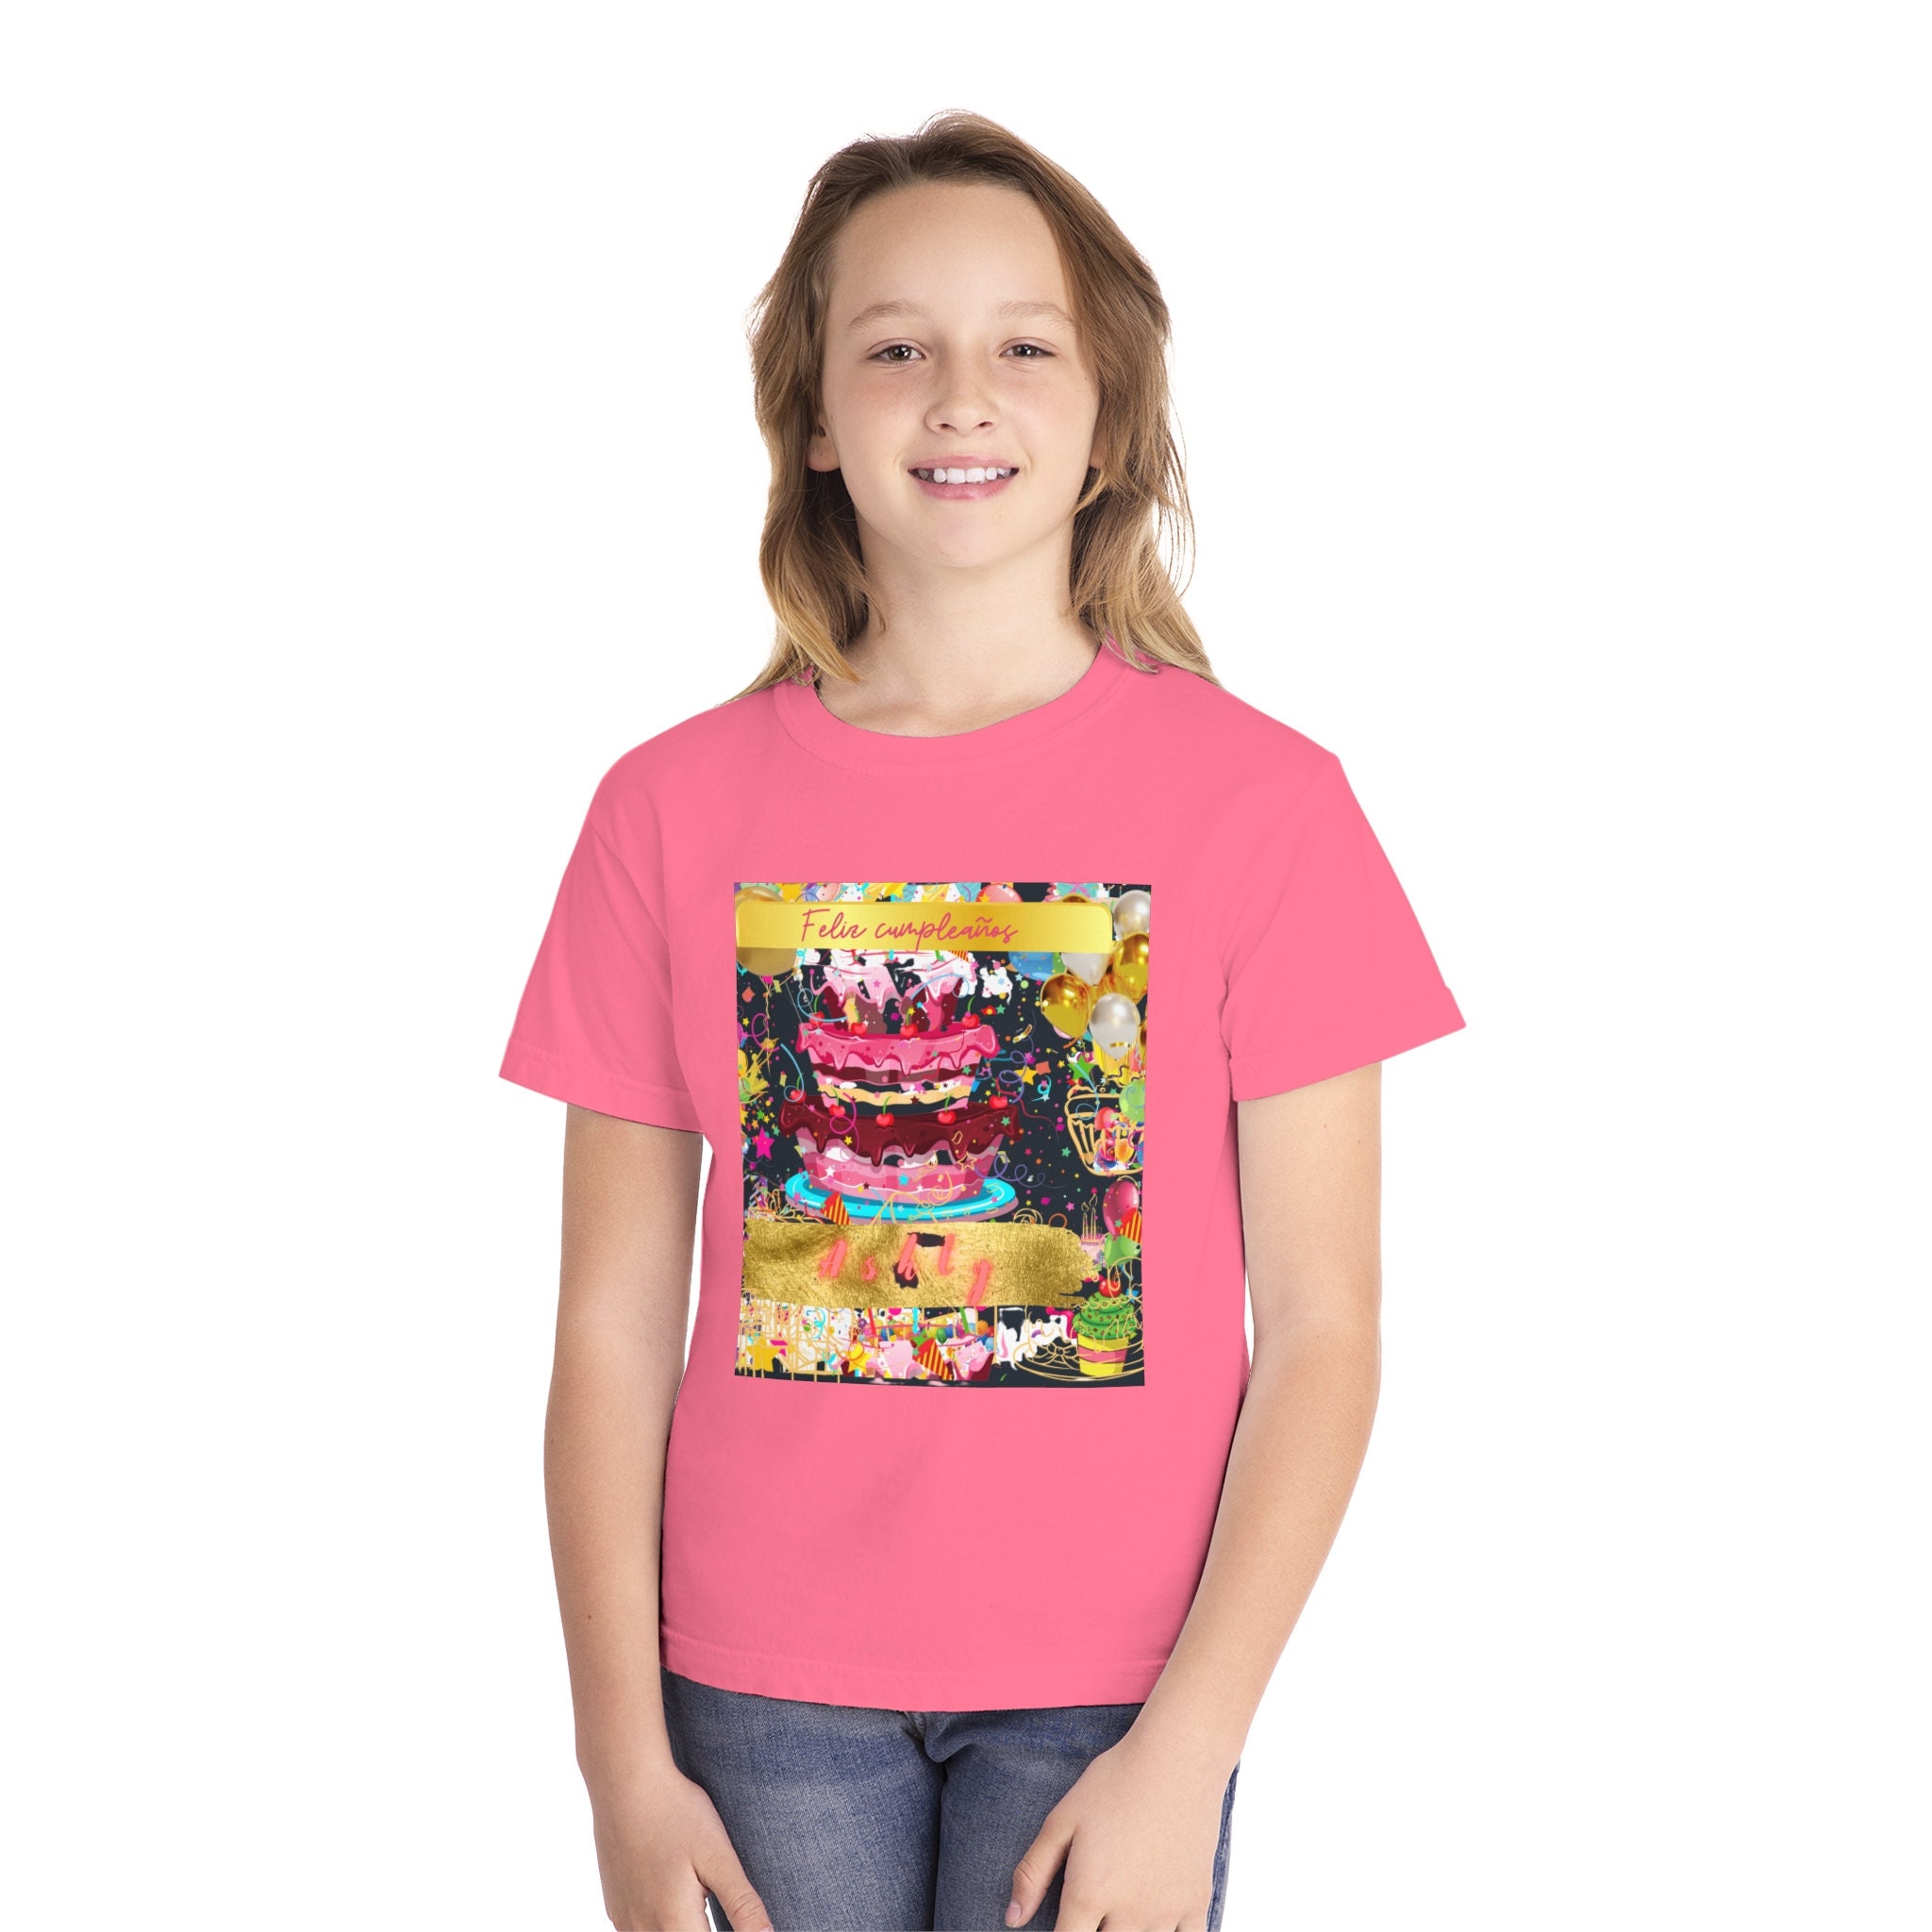 Comprar Pack 3 Camisetas niña calada even-aralia modelo 431 Online - Saldos  Canarias